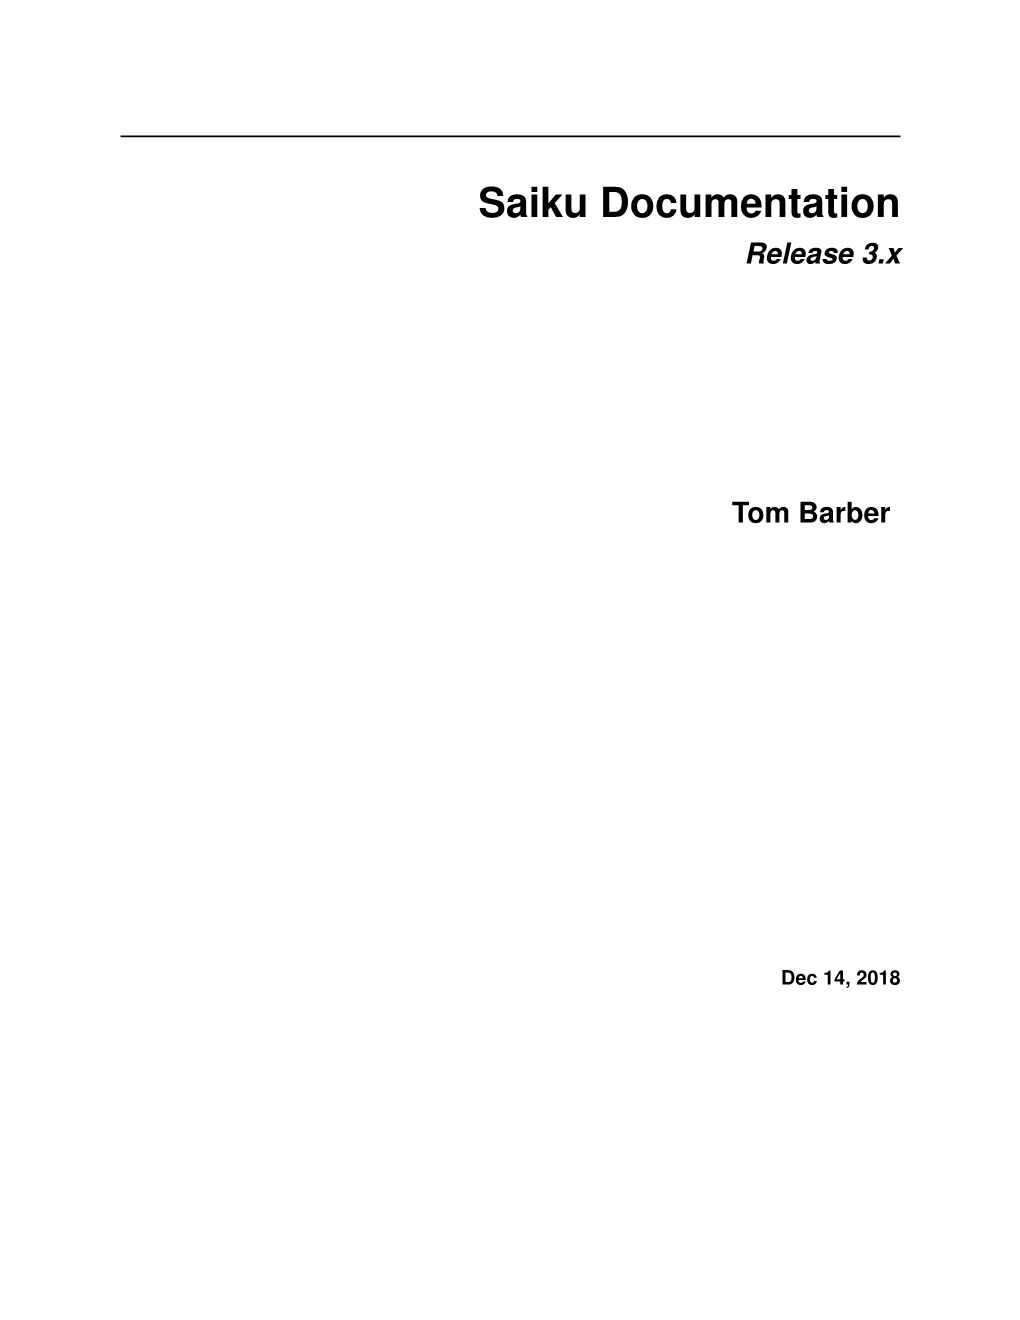 Saiku Documentation Release 3.X